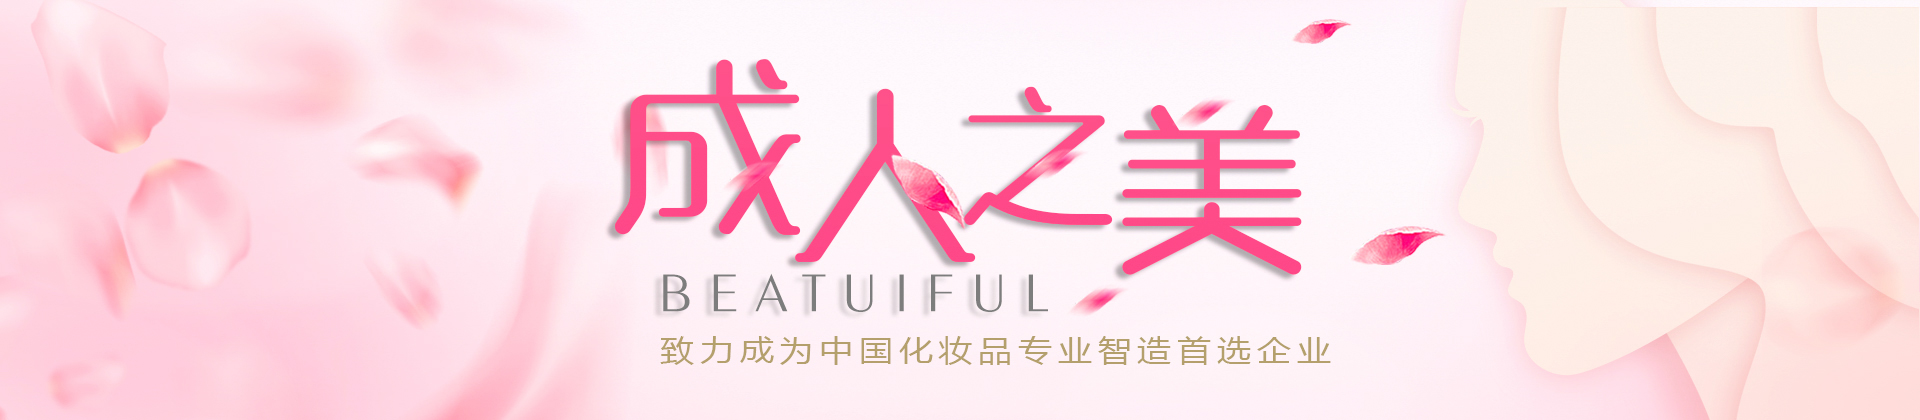 ayx官网登陆:食药监局规范万余种世界化妆品质料中文称号_健康频道_凤凰网